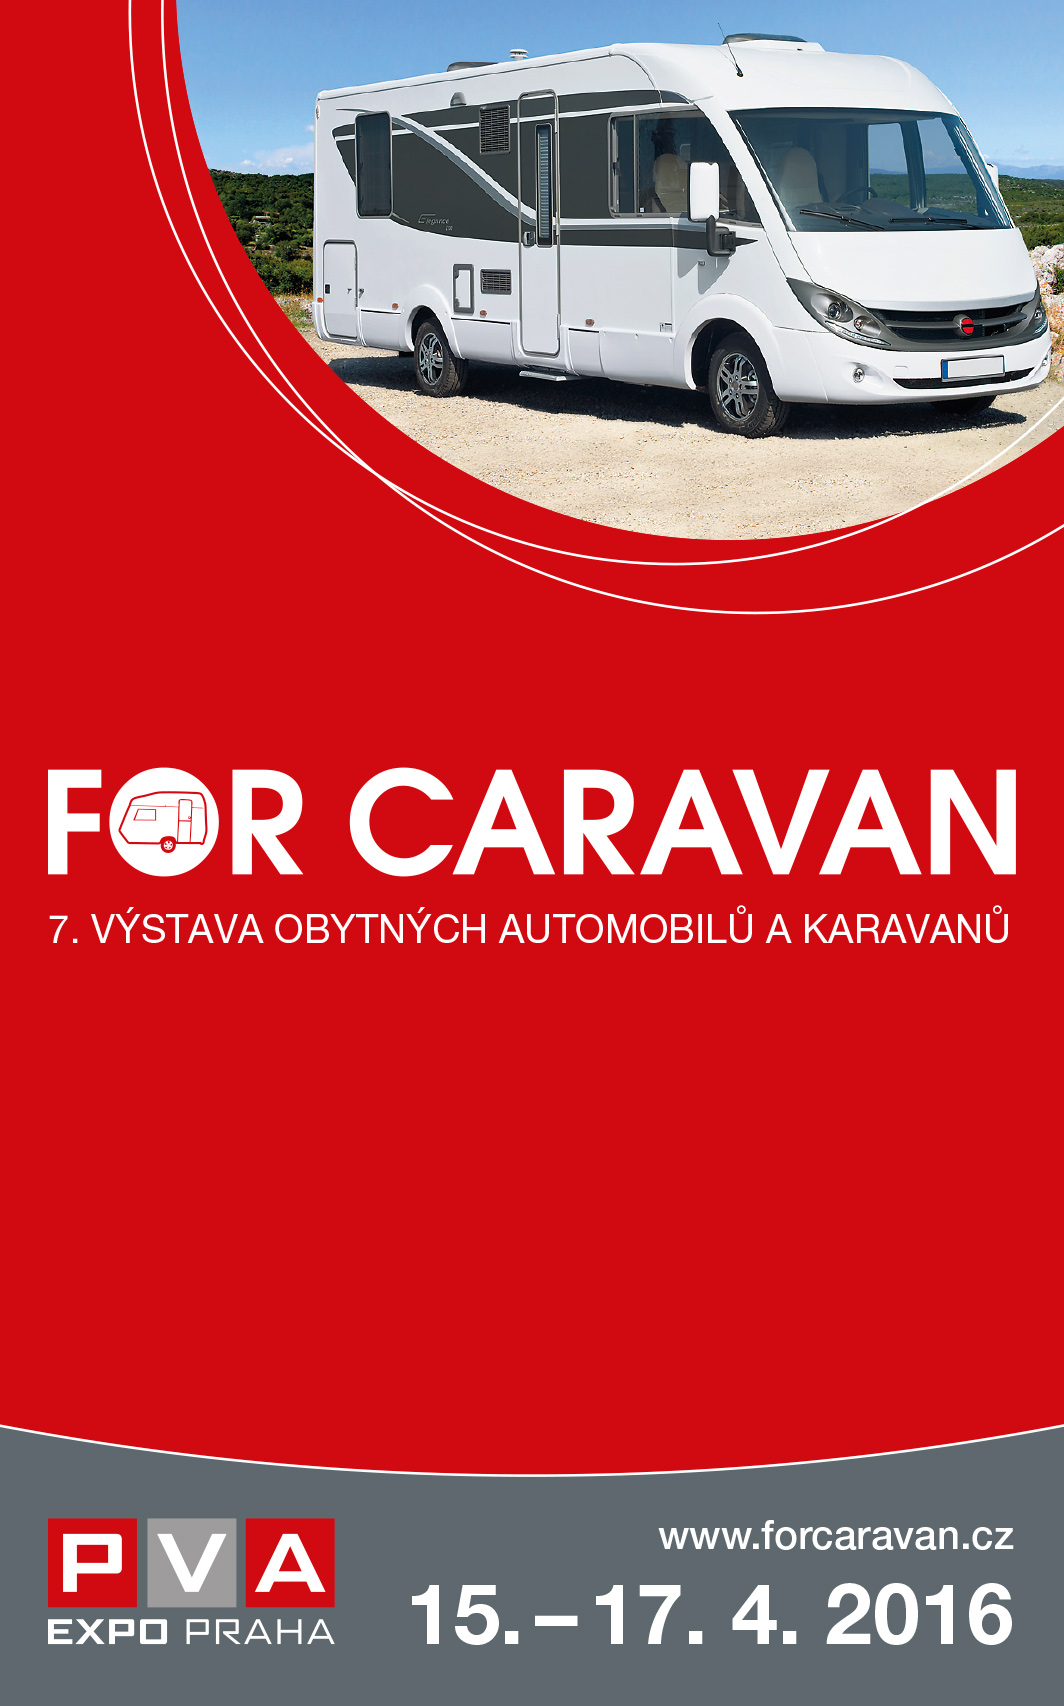 FOR CARAVAN 2016